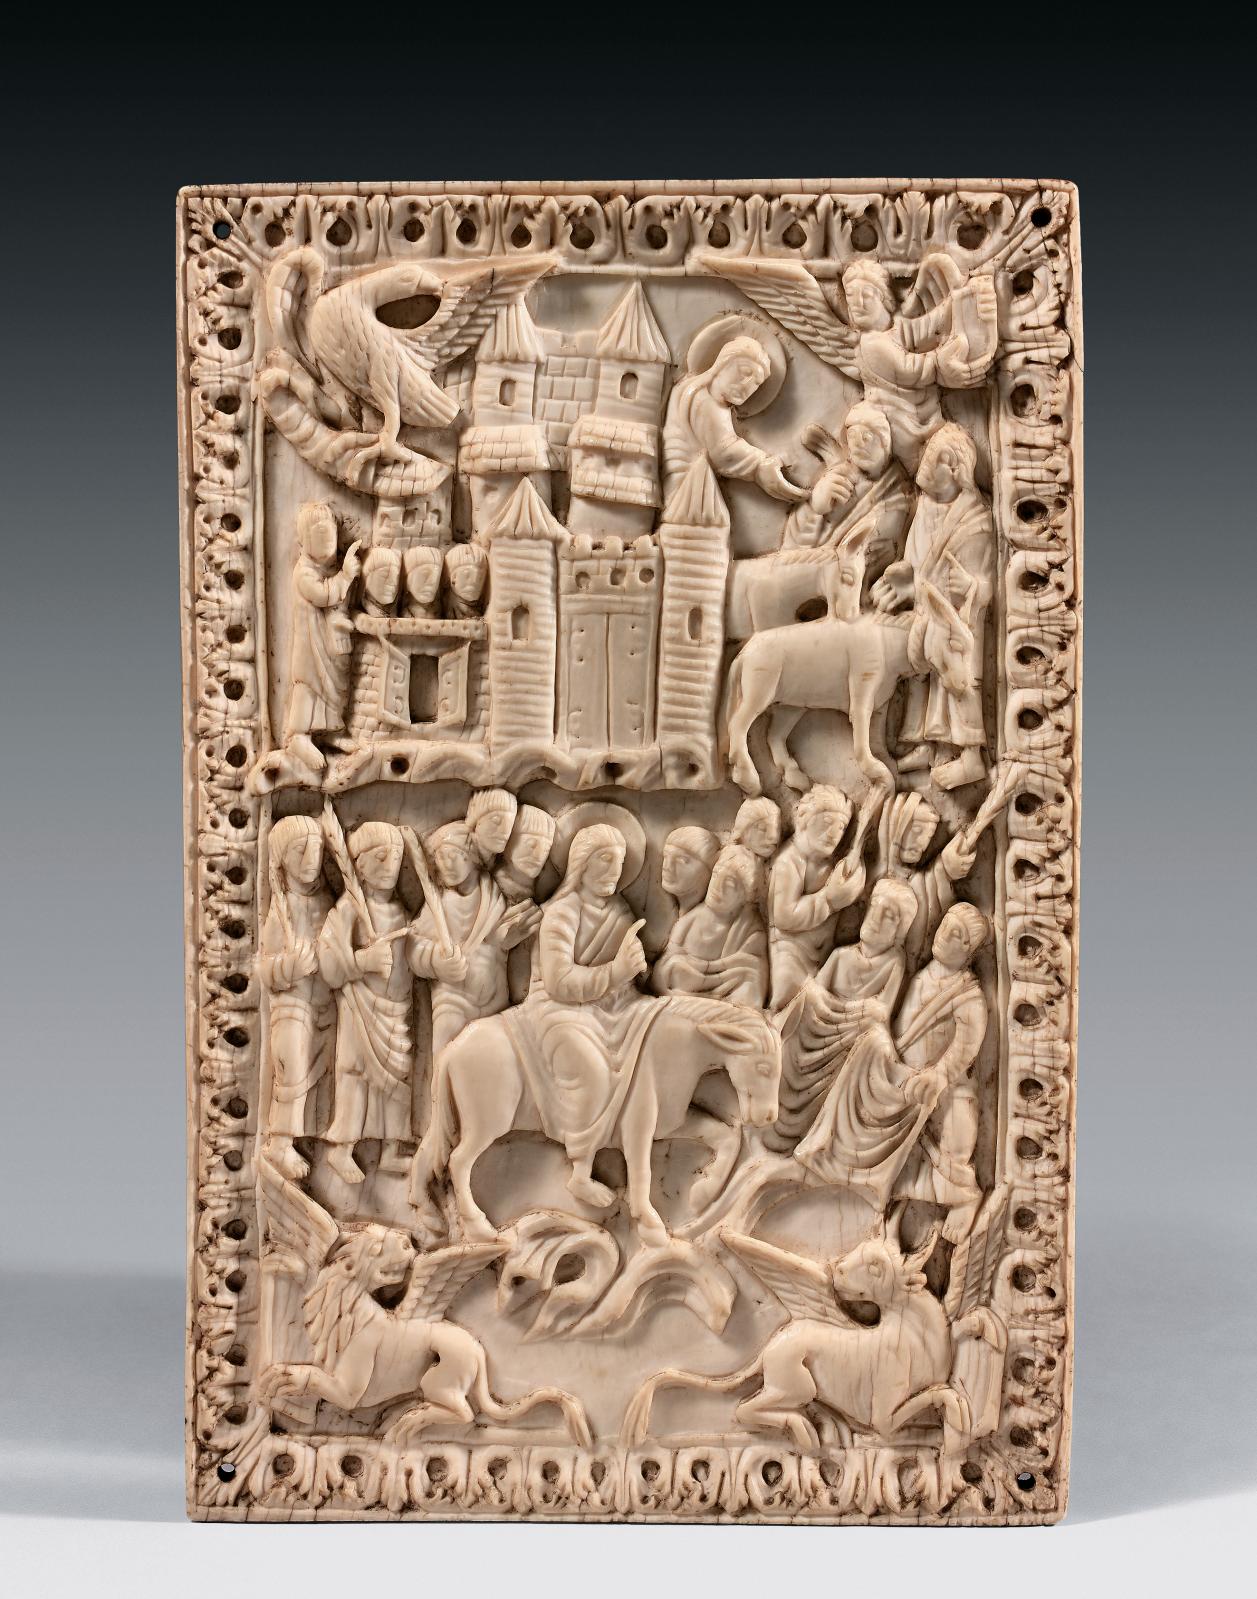 3 602 400 € pour un ivoire sculpté ou l’apothéose de l’art carolingien